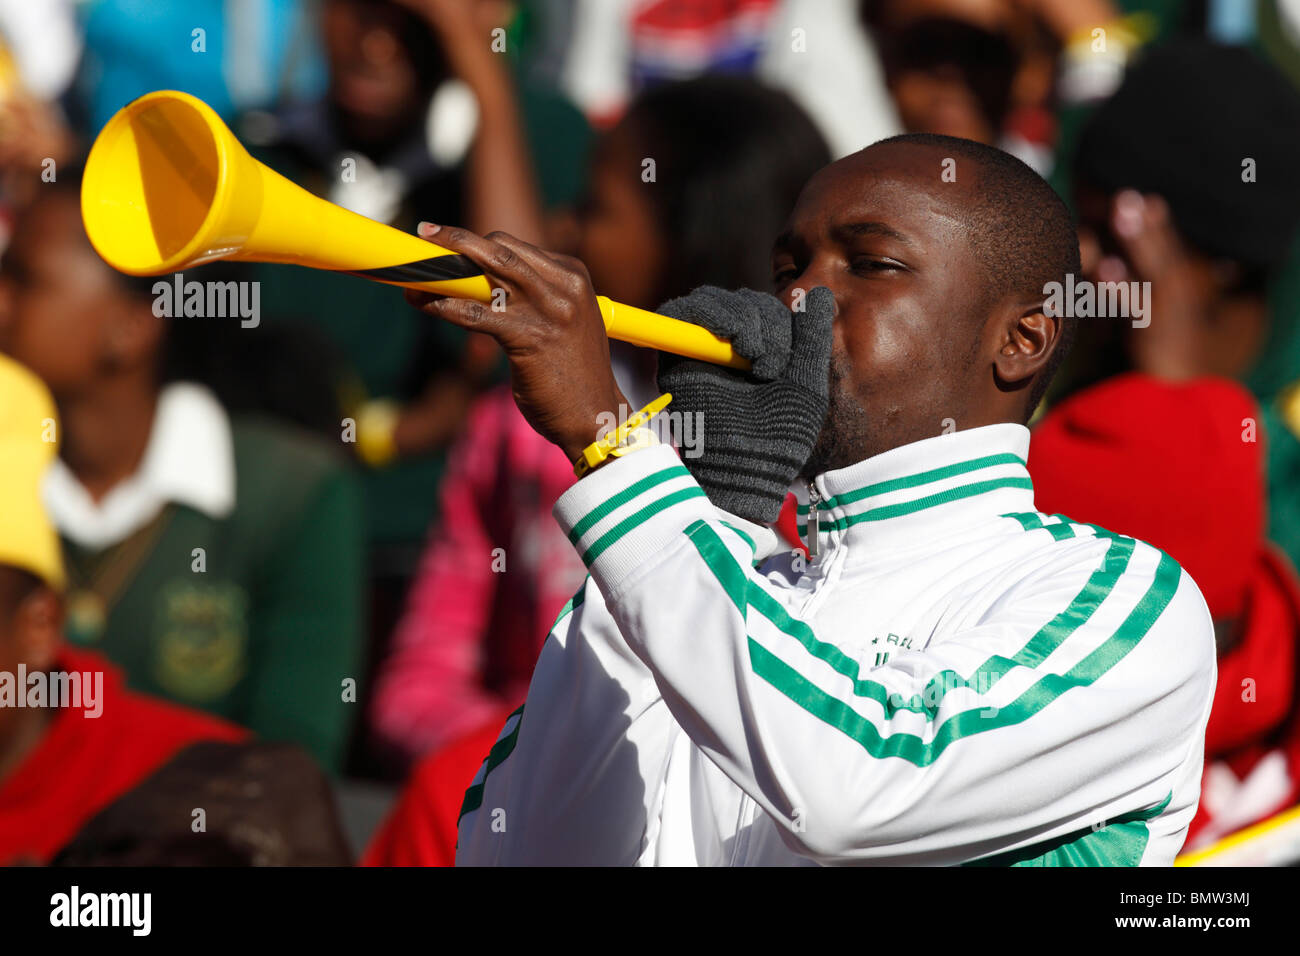 Mann bläst eine Vuvuzela bei einer 2010 FIFA World Cup Football match zwischen Slowenien und den USA 18. Juni 2010. Stockfoto